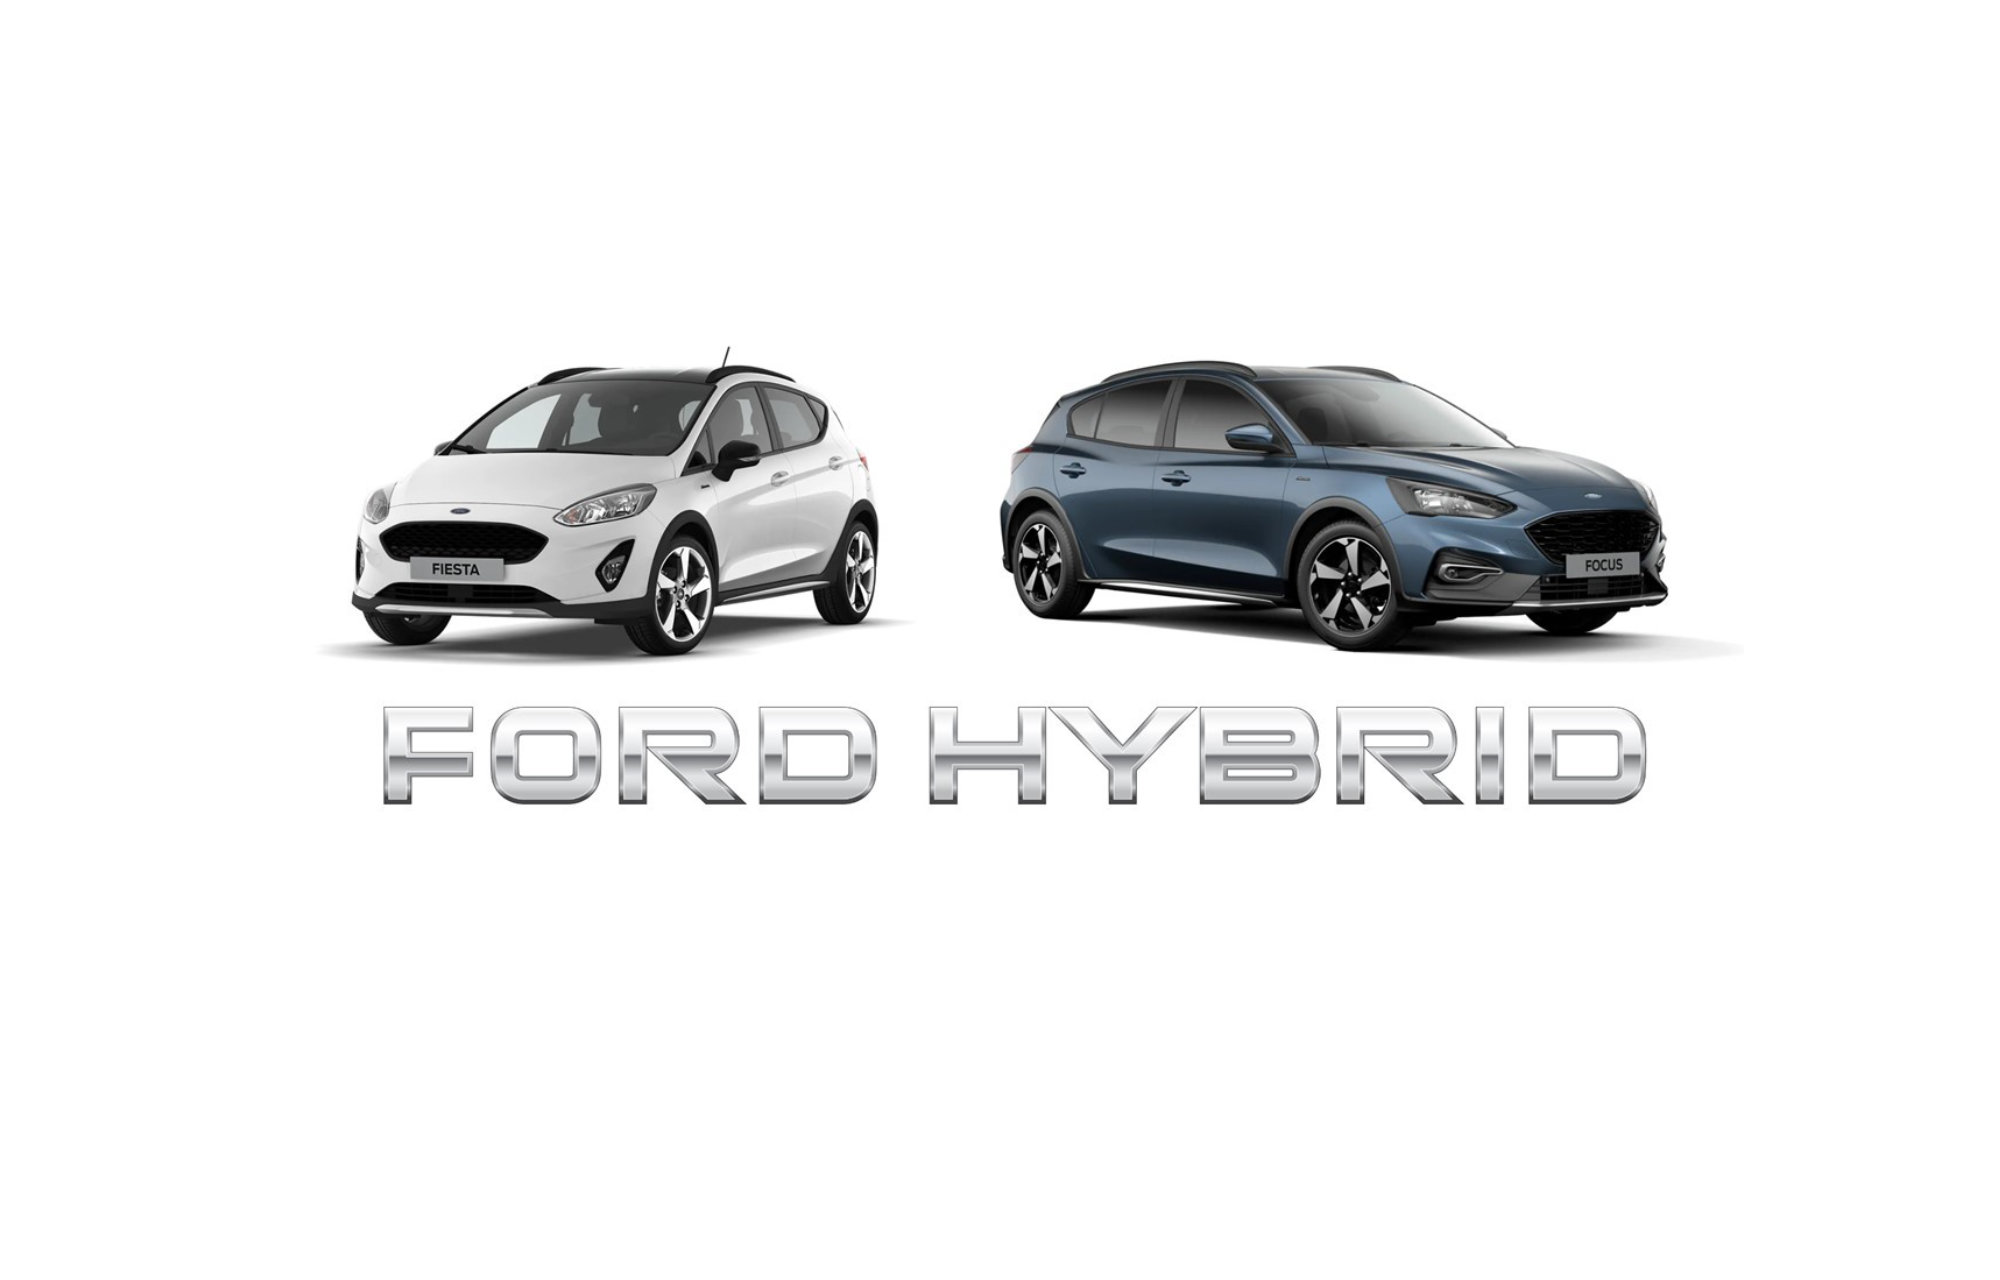 **Fiesta et Focus EcoBoost Hybrid : la nouvelle génération passe à l’hybride pour la première fois**